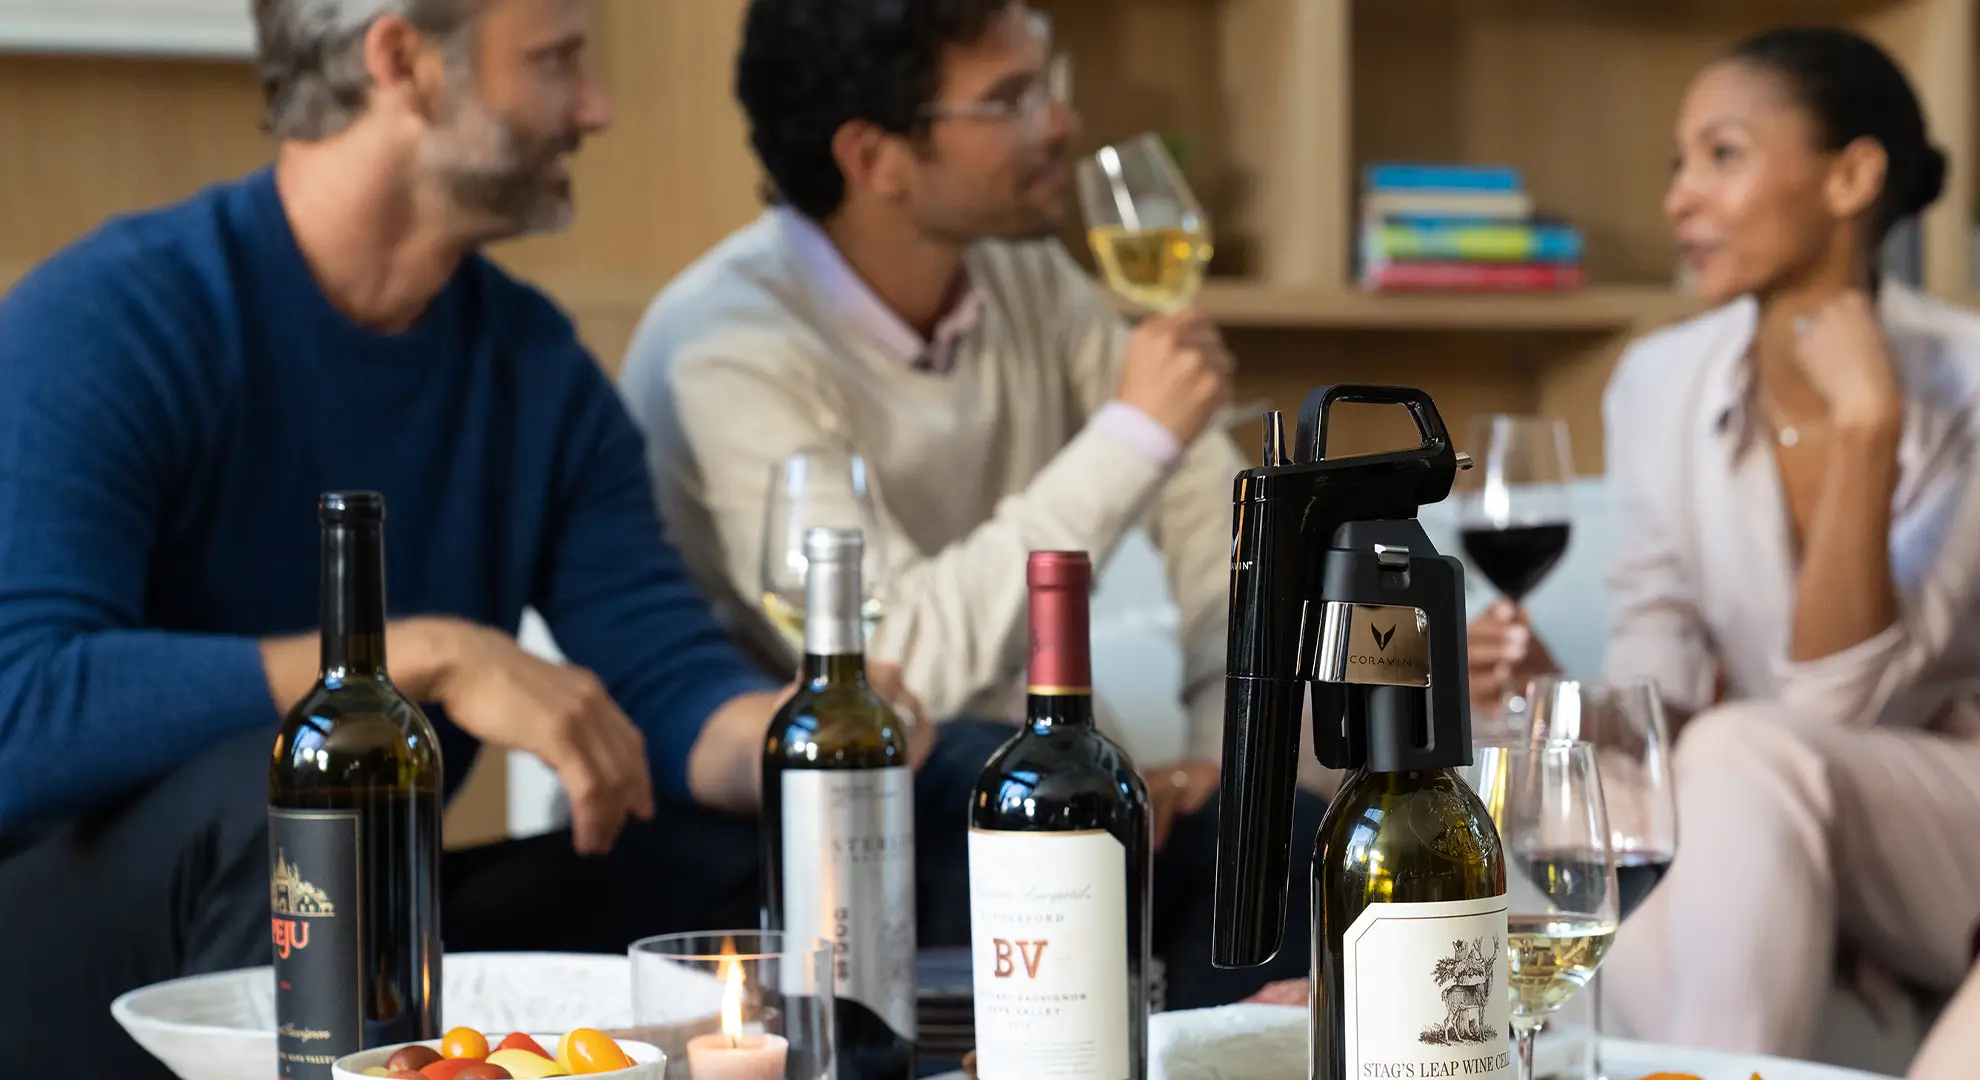 Des amis discutant dans un salon, où ils boivent du vin et mangent de la charcuterie, avec un système de préservation du vin Coravin mis en évidence.